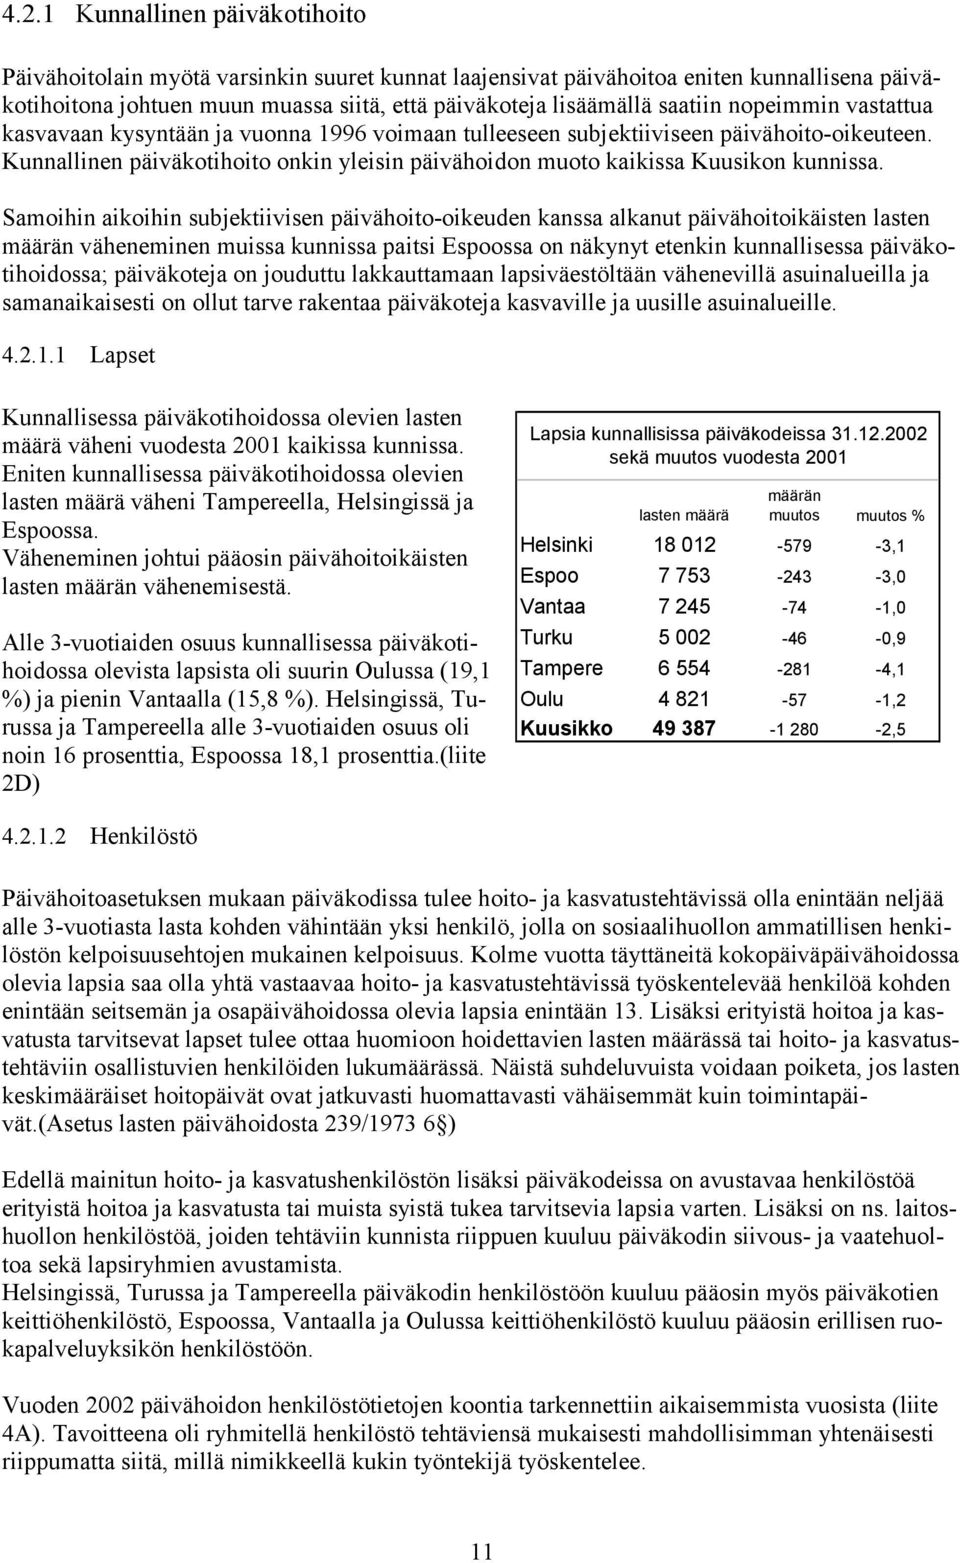 Samoihin aikoihin subjektiivisen päivähoito-oikeuden kanssa alkanut päivähoitoikäisten lasten määrän väheneminen muissa kunnissa paitsi Espoossa on näkynyt etenkin kunnallisessa päiväkotihoidossa;